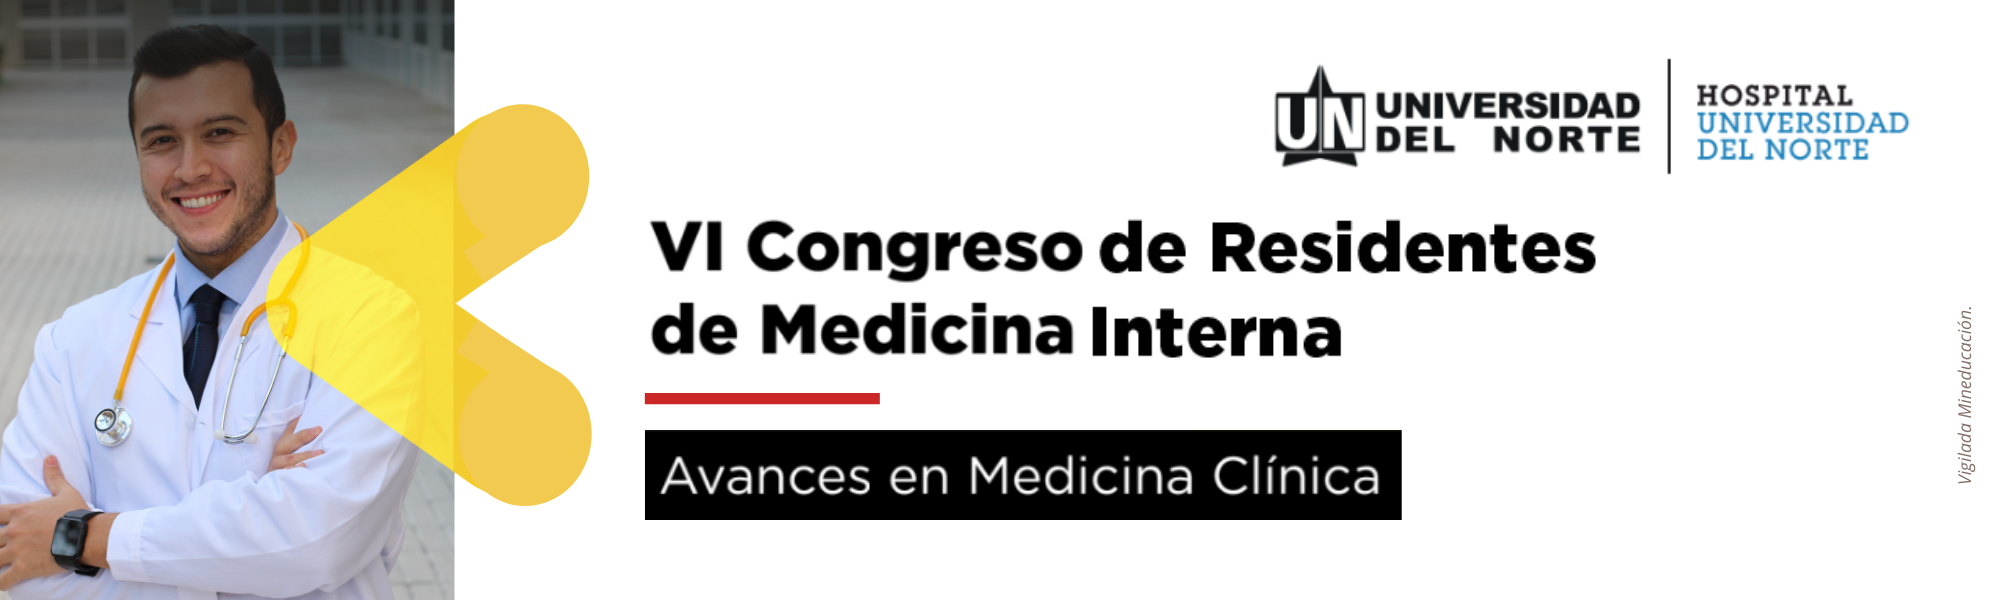 VI Congreso de Residentes de Medicina Interna Uninorte